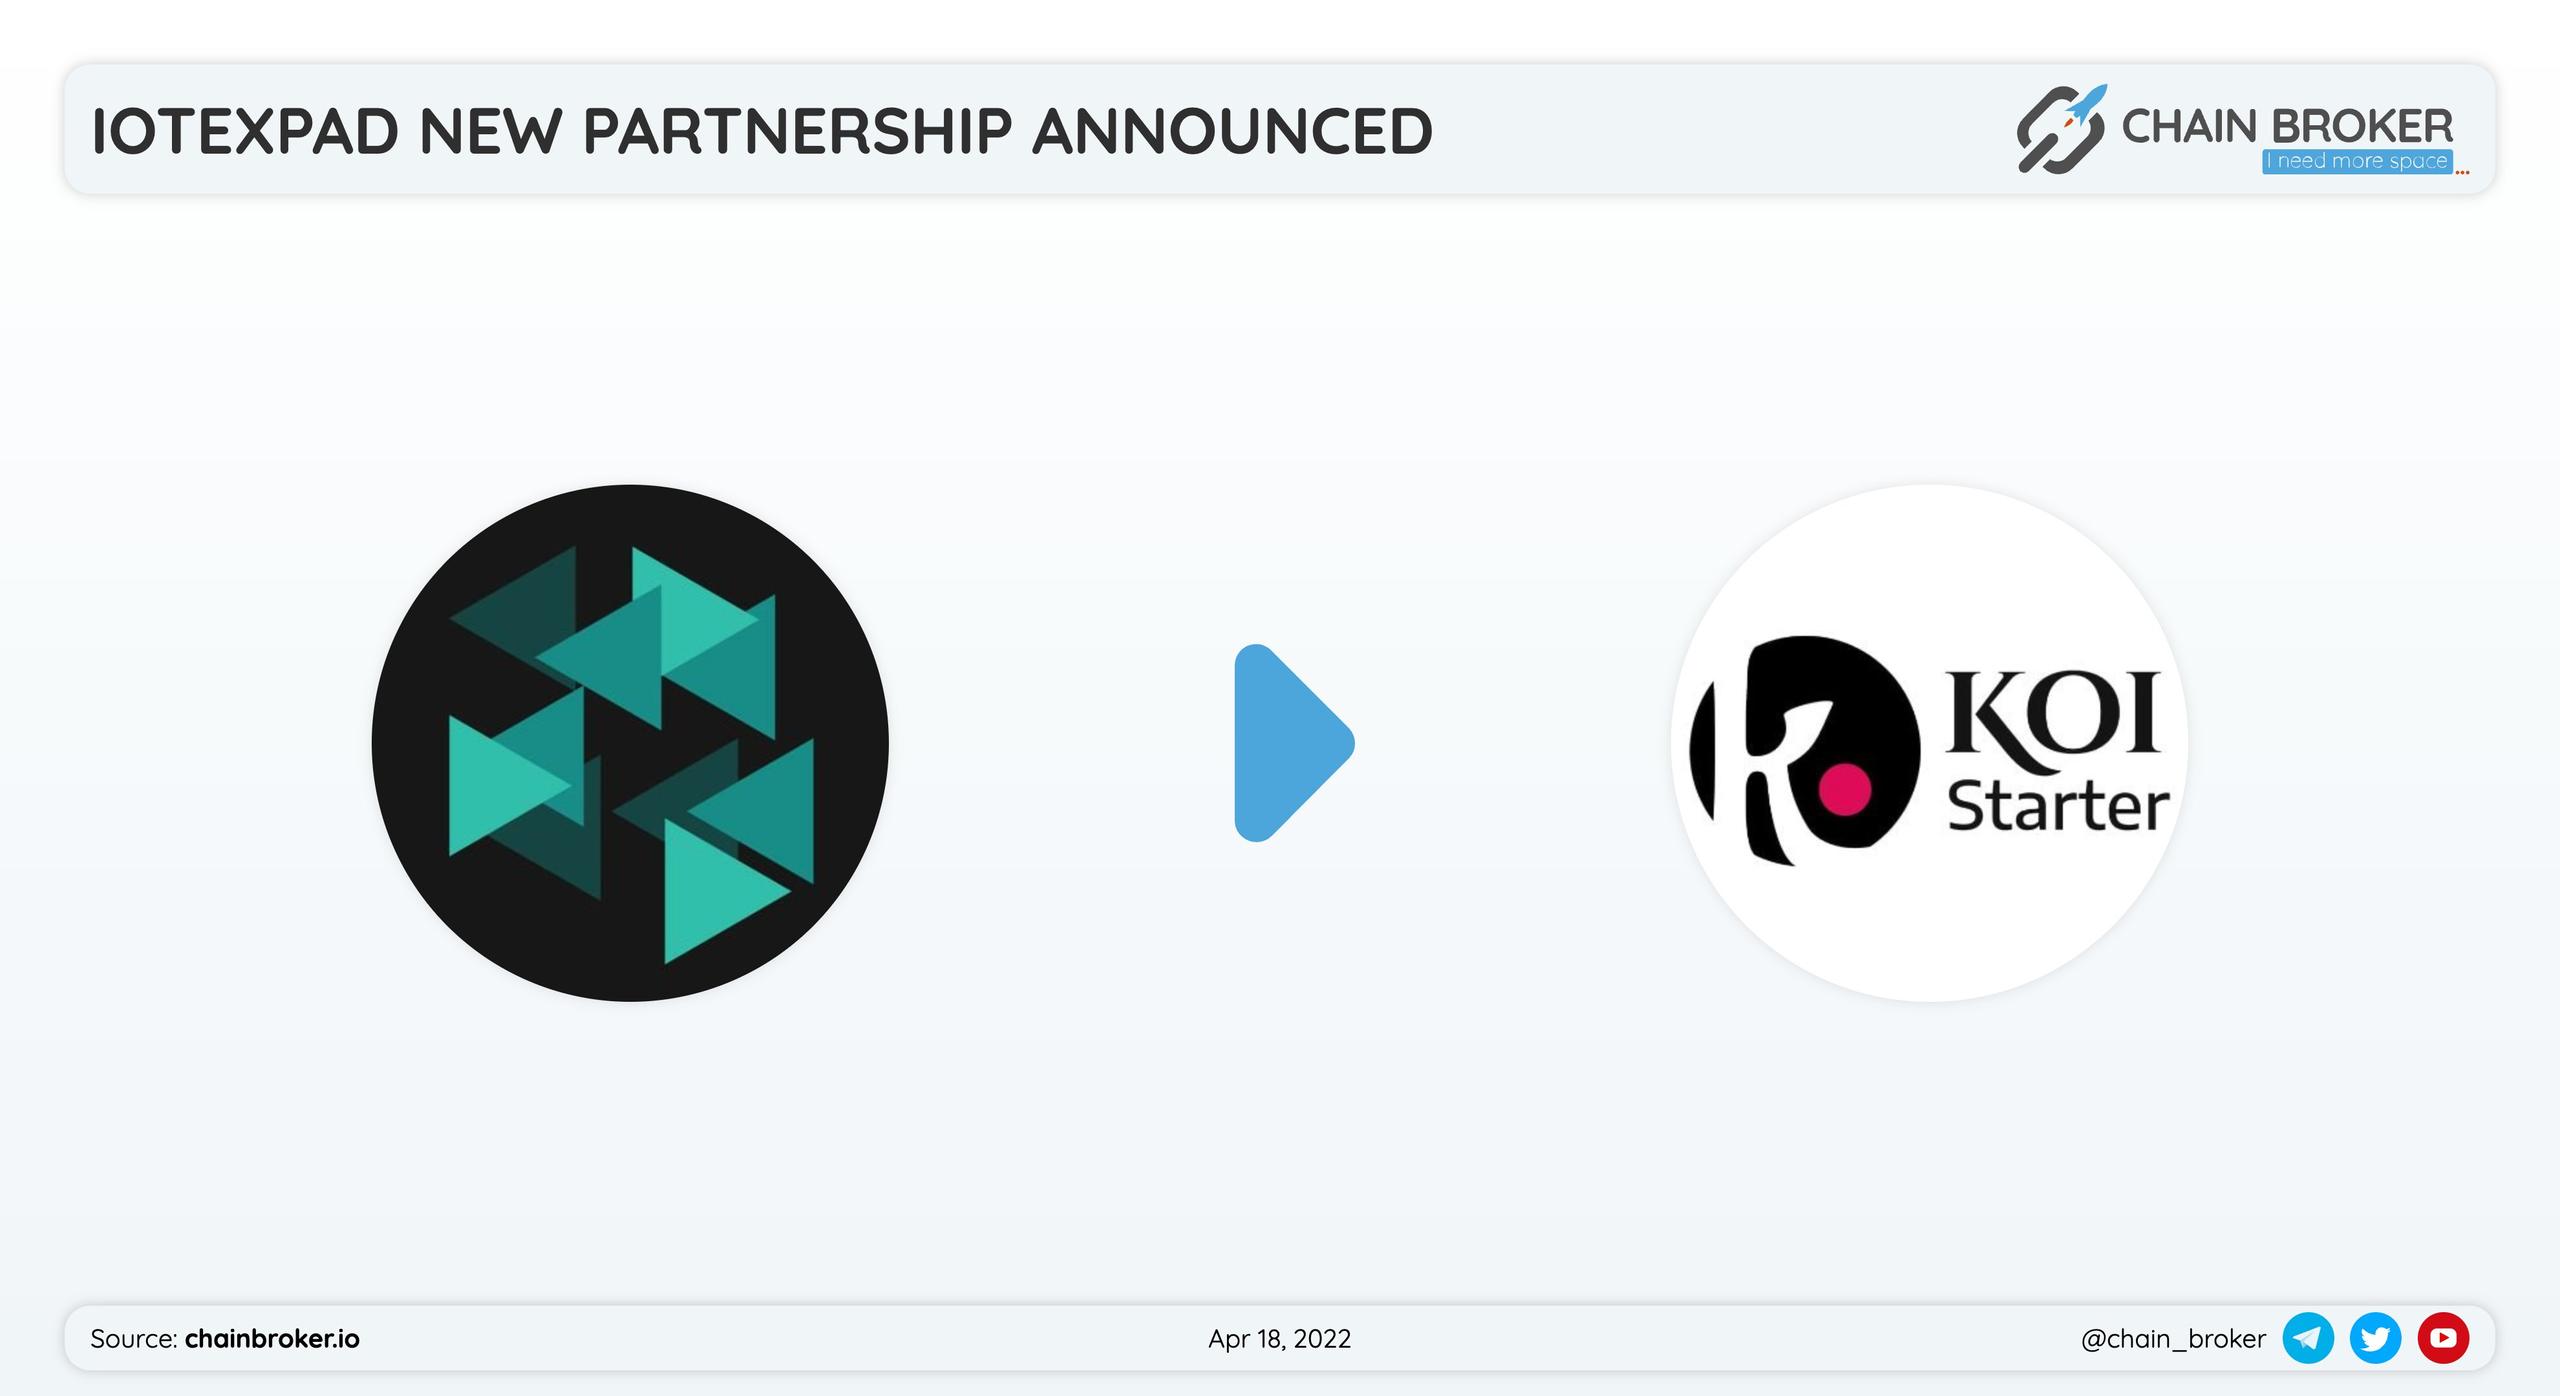 IotexPad has partnered with Koistarter